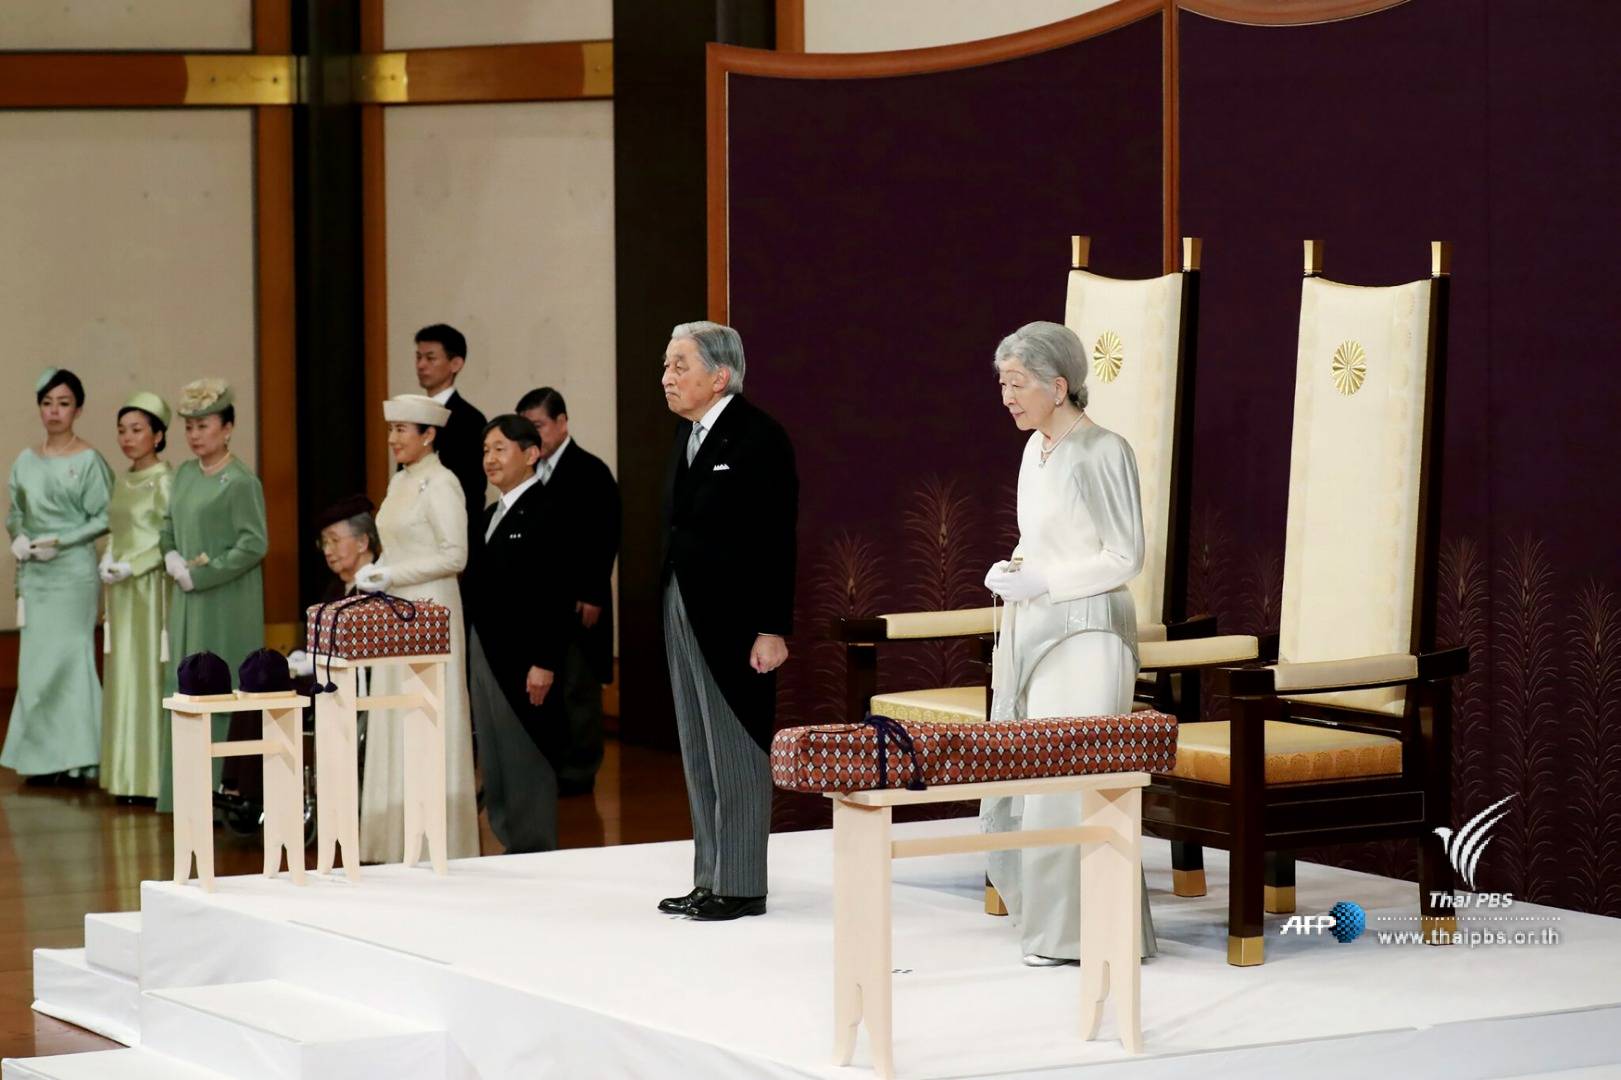 สมเด็จพระจักรพรรดิอากิฮิโตะ ทรงประกาศสละราชสมบัติ อย่างเป็นทางการ หลังครองราชย์มา 30 ปี 